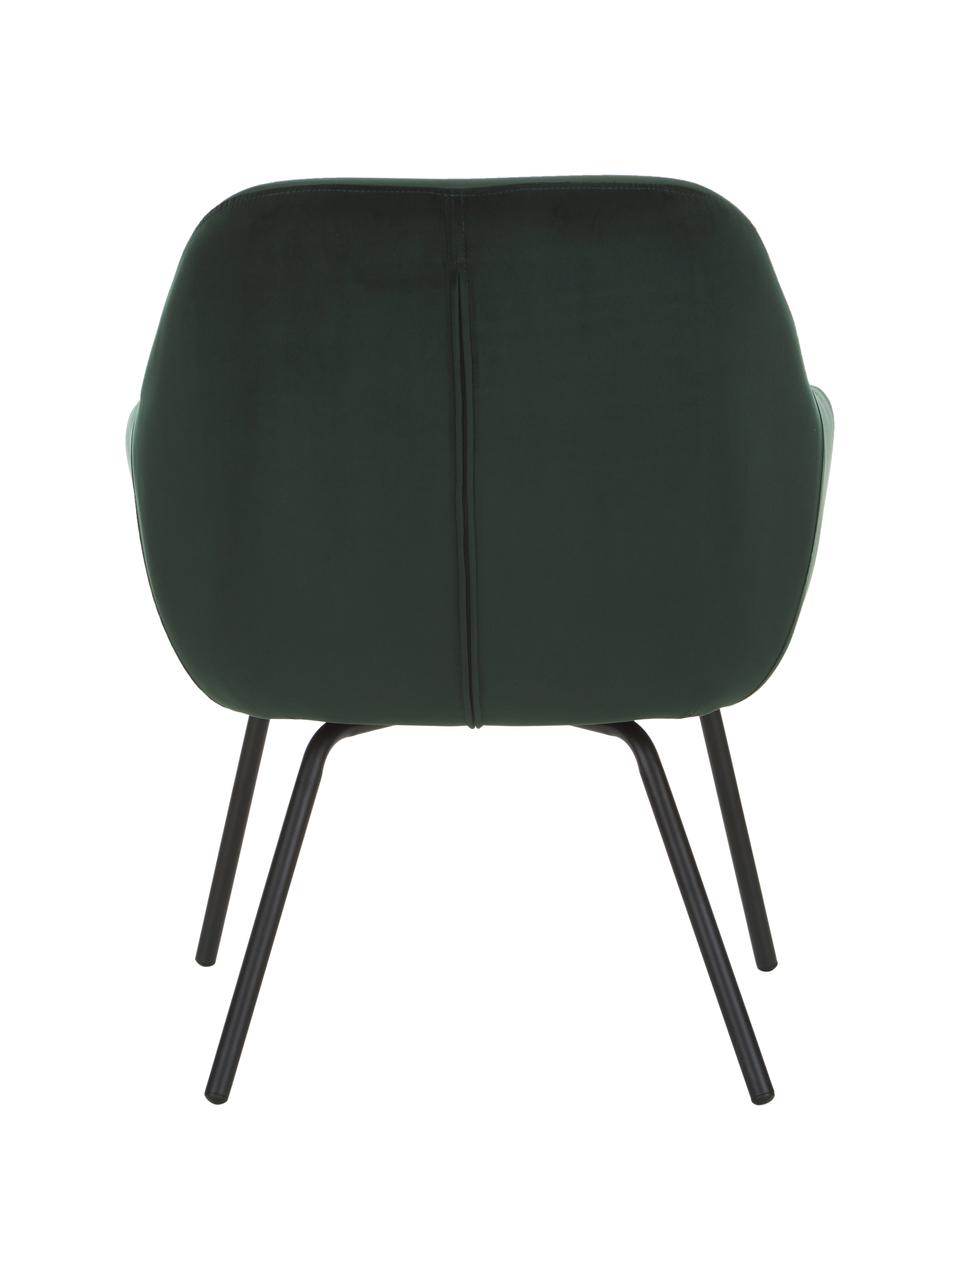 Fluwelen fauteuil Jana in donkergroen, Bekleding: fluweel (polyester), Poten: gepoedercoat metaal, Donkergroen, B 72 x D 68 cm